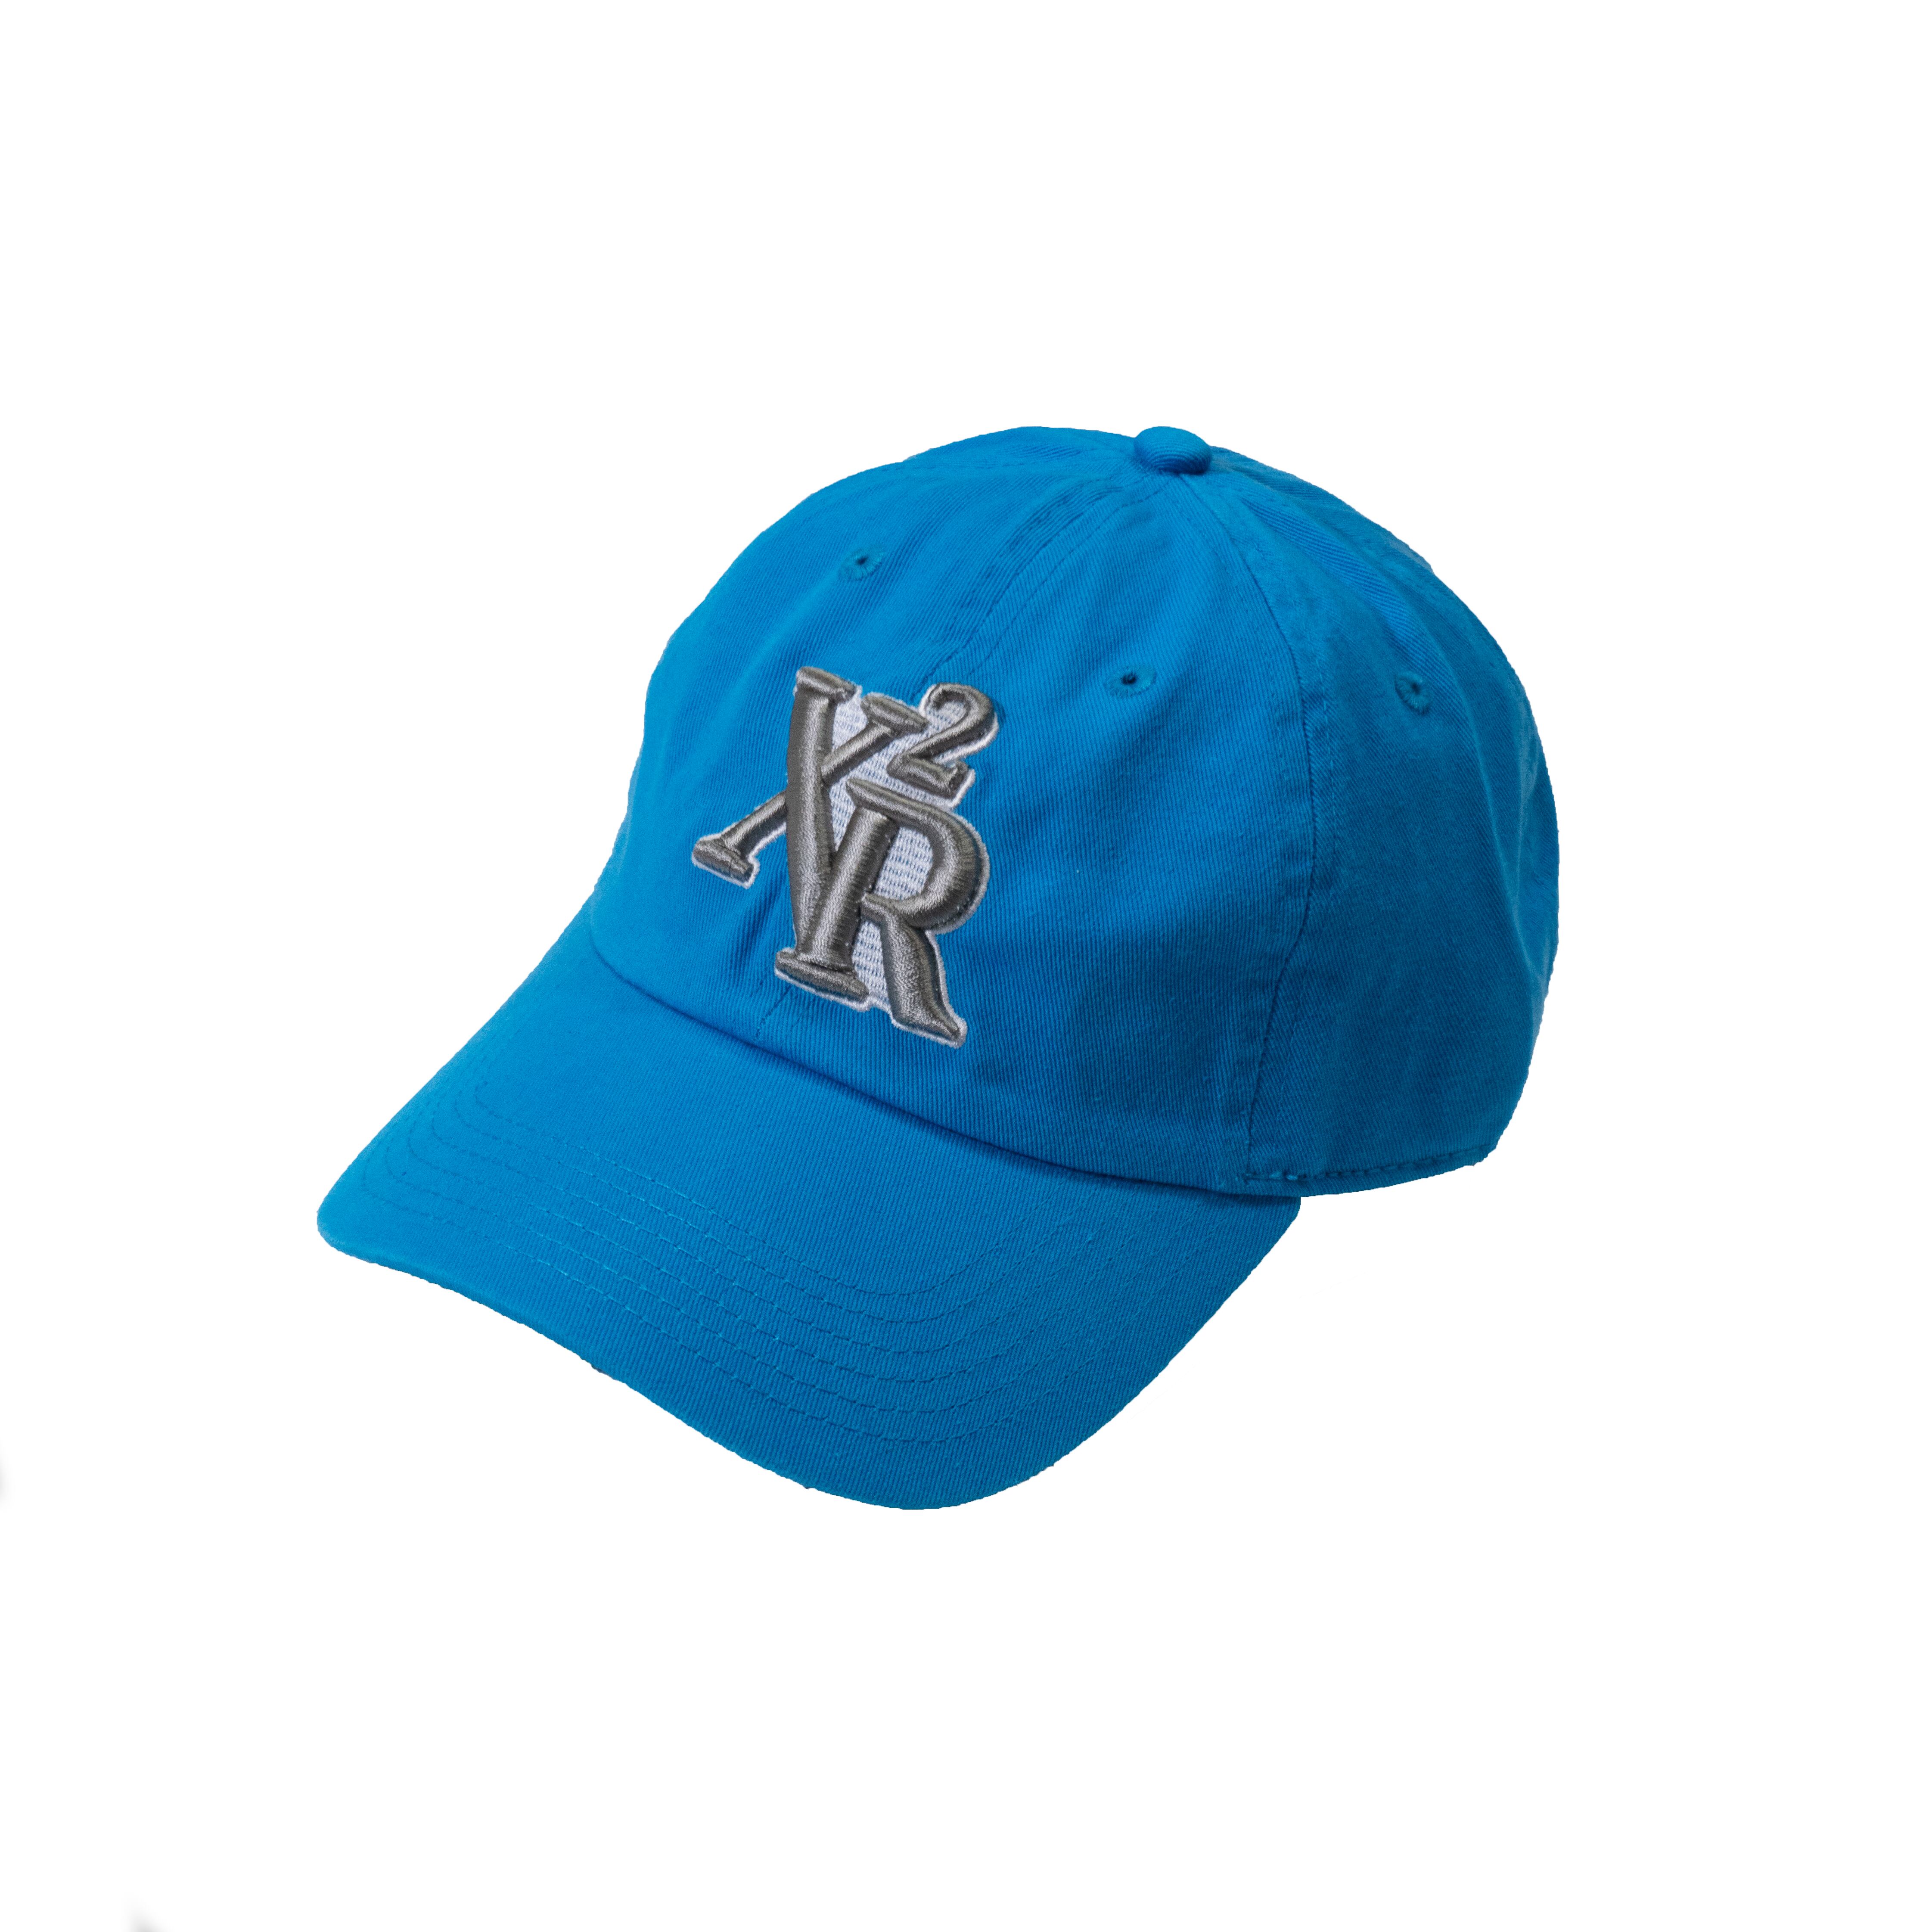 XAIREX 3D LOGO CAP "LIGHT BLUE”［XAI-52］